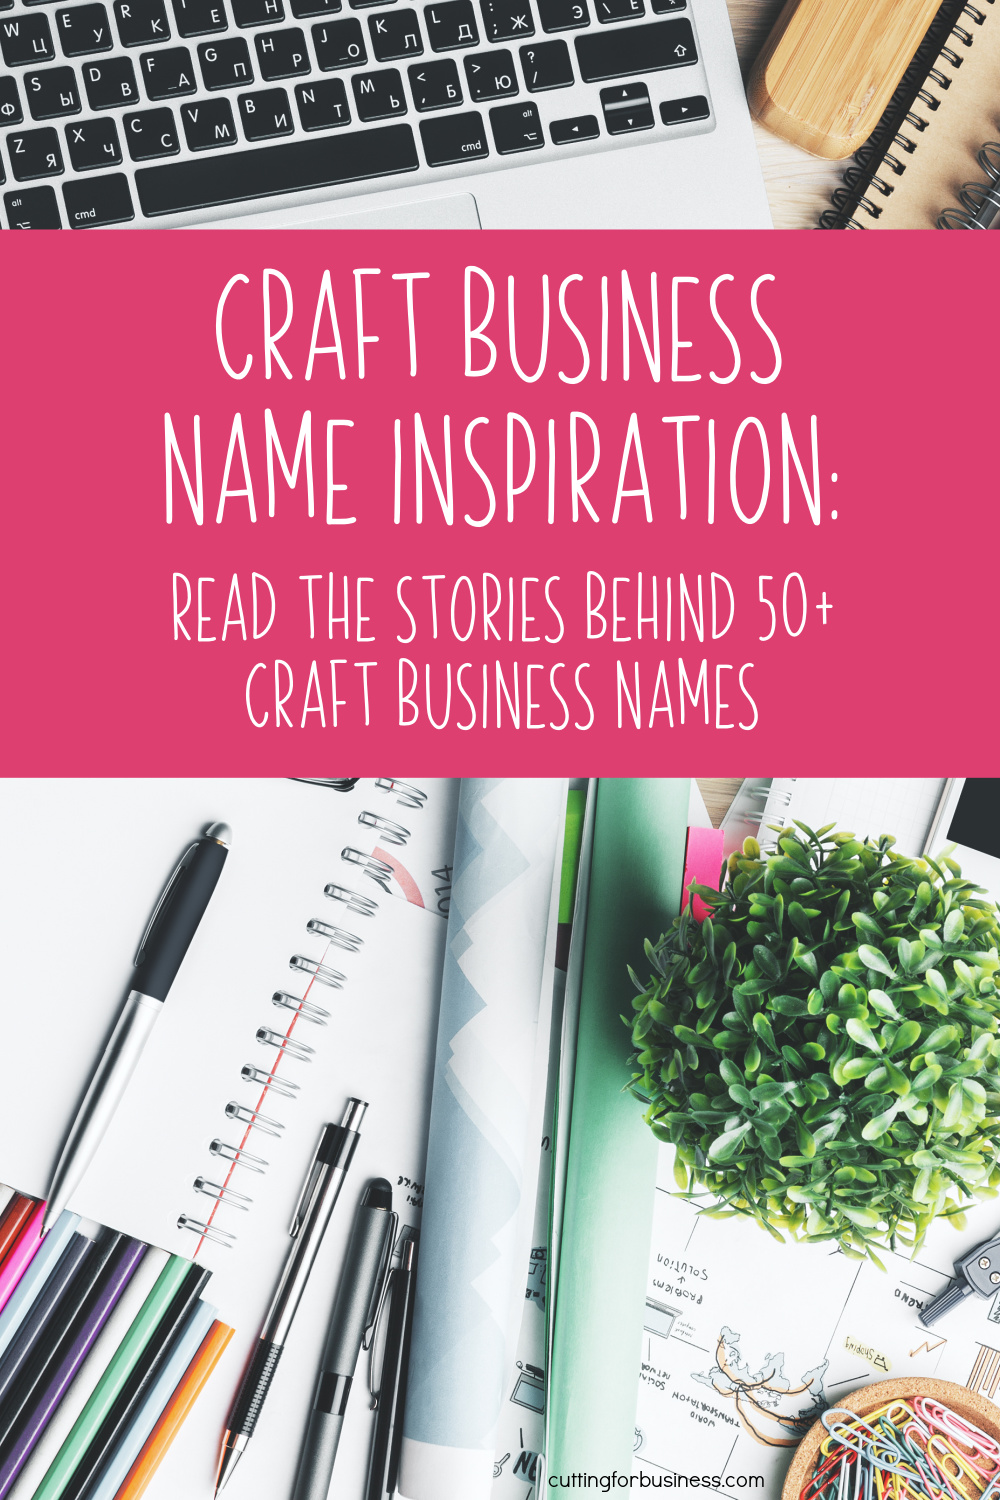 Craft Business Name Inspiration: Read the Stories Behind 50+ Craft Business Names - cuttingforbusiness.com